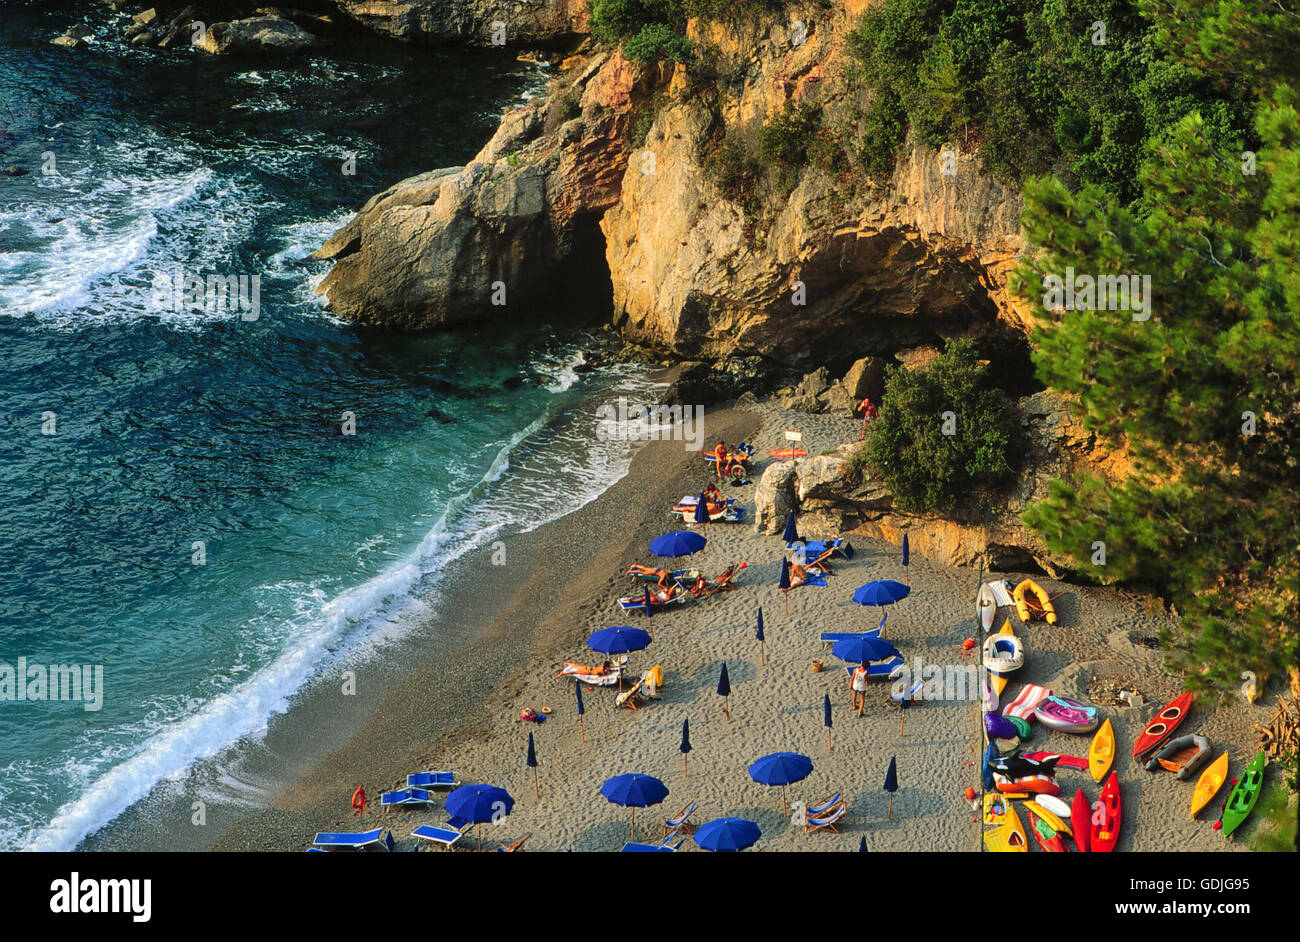 the Echo of the Sea beach, near Lerici city (La Spezia, Liguria region, Italy)    - la spiaggia Eco del Mare, fra Lerici e Tellaro (La Spezia) Stock Photo